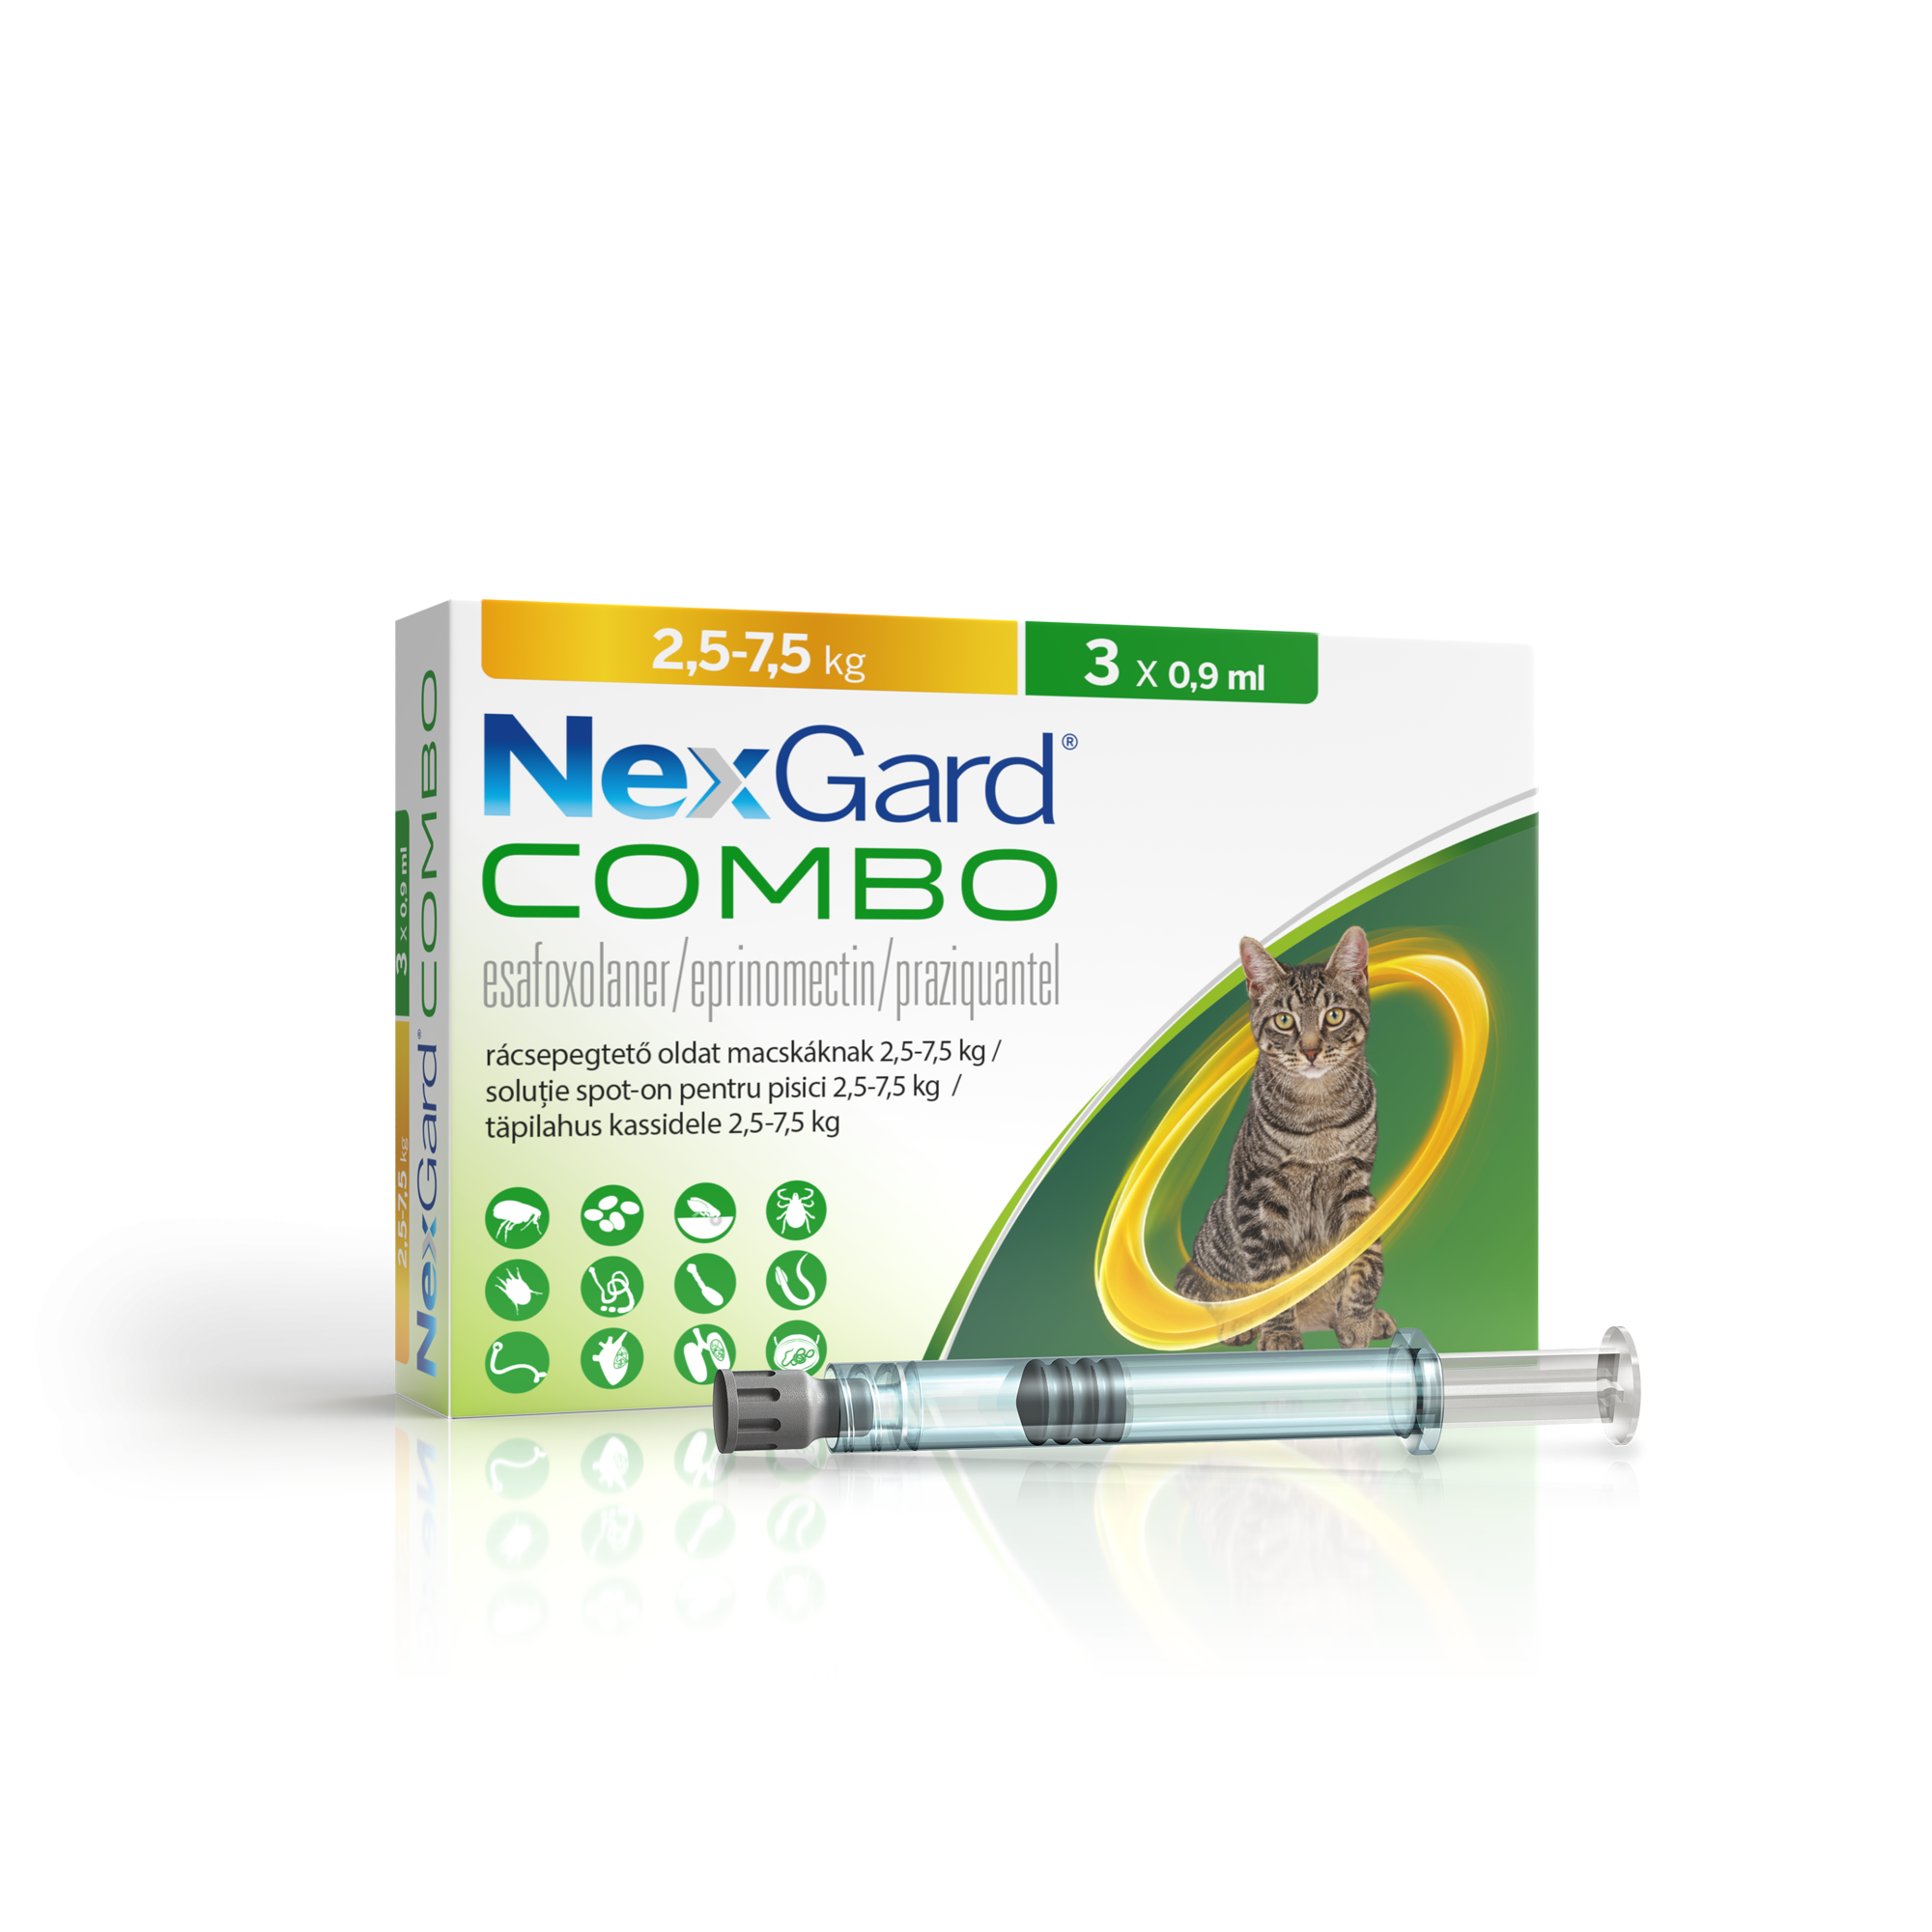 Nexgard Combo Solutie Spot-on Pentru Pisici De 2.5-7.5 Kg, 3x0.9ml